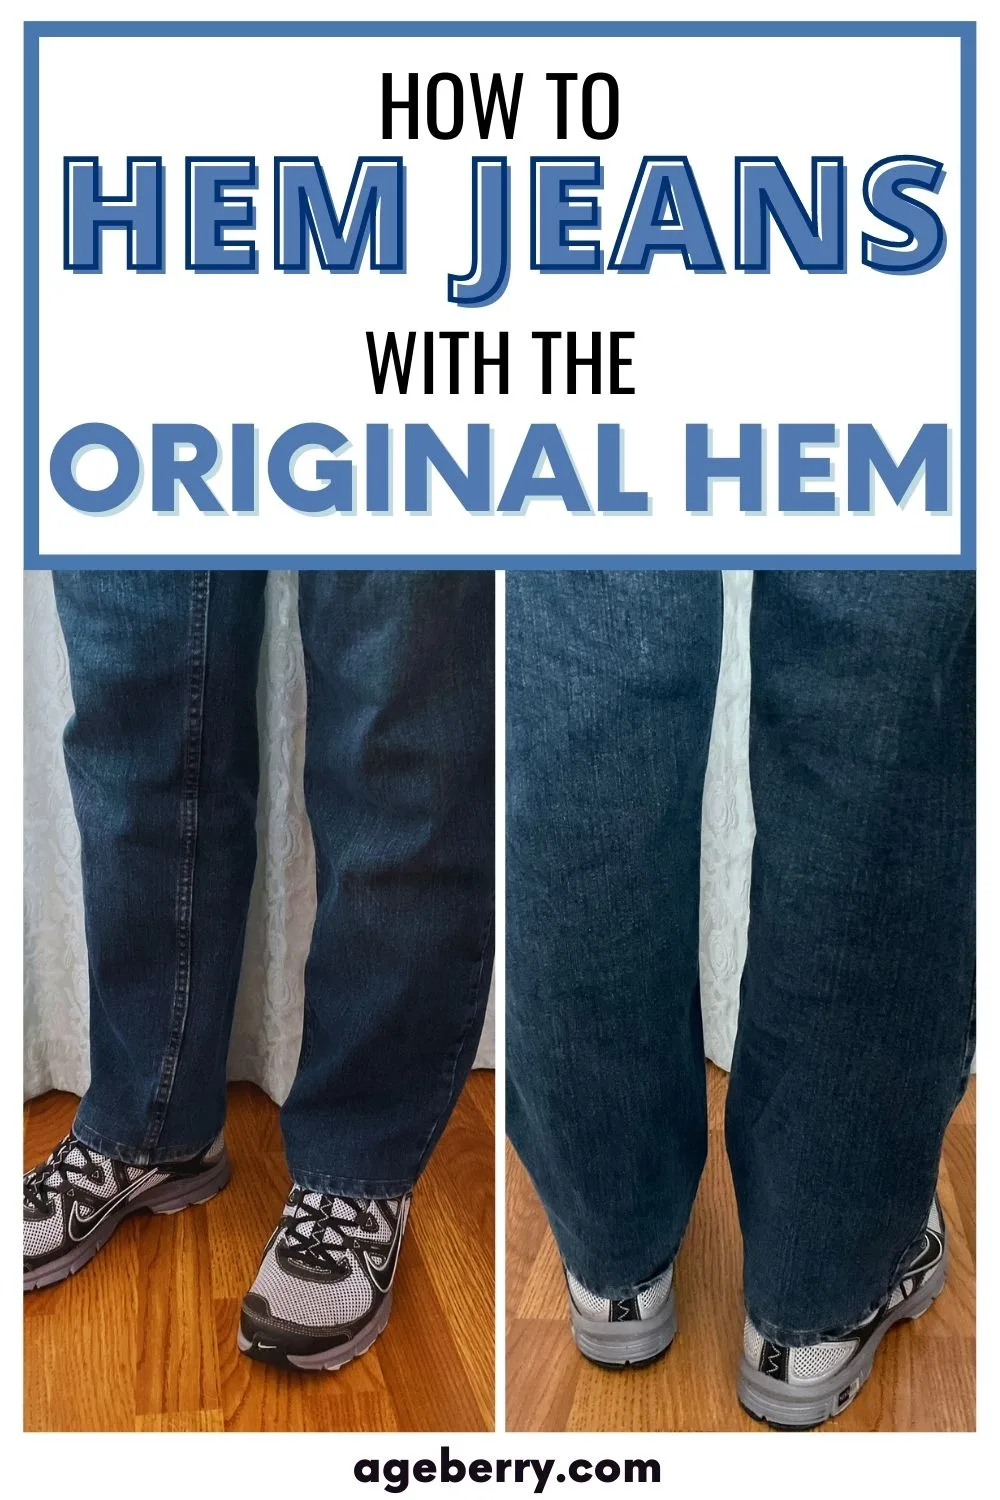 How to Hem Jeans with The Original Hem